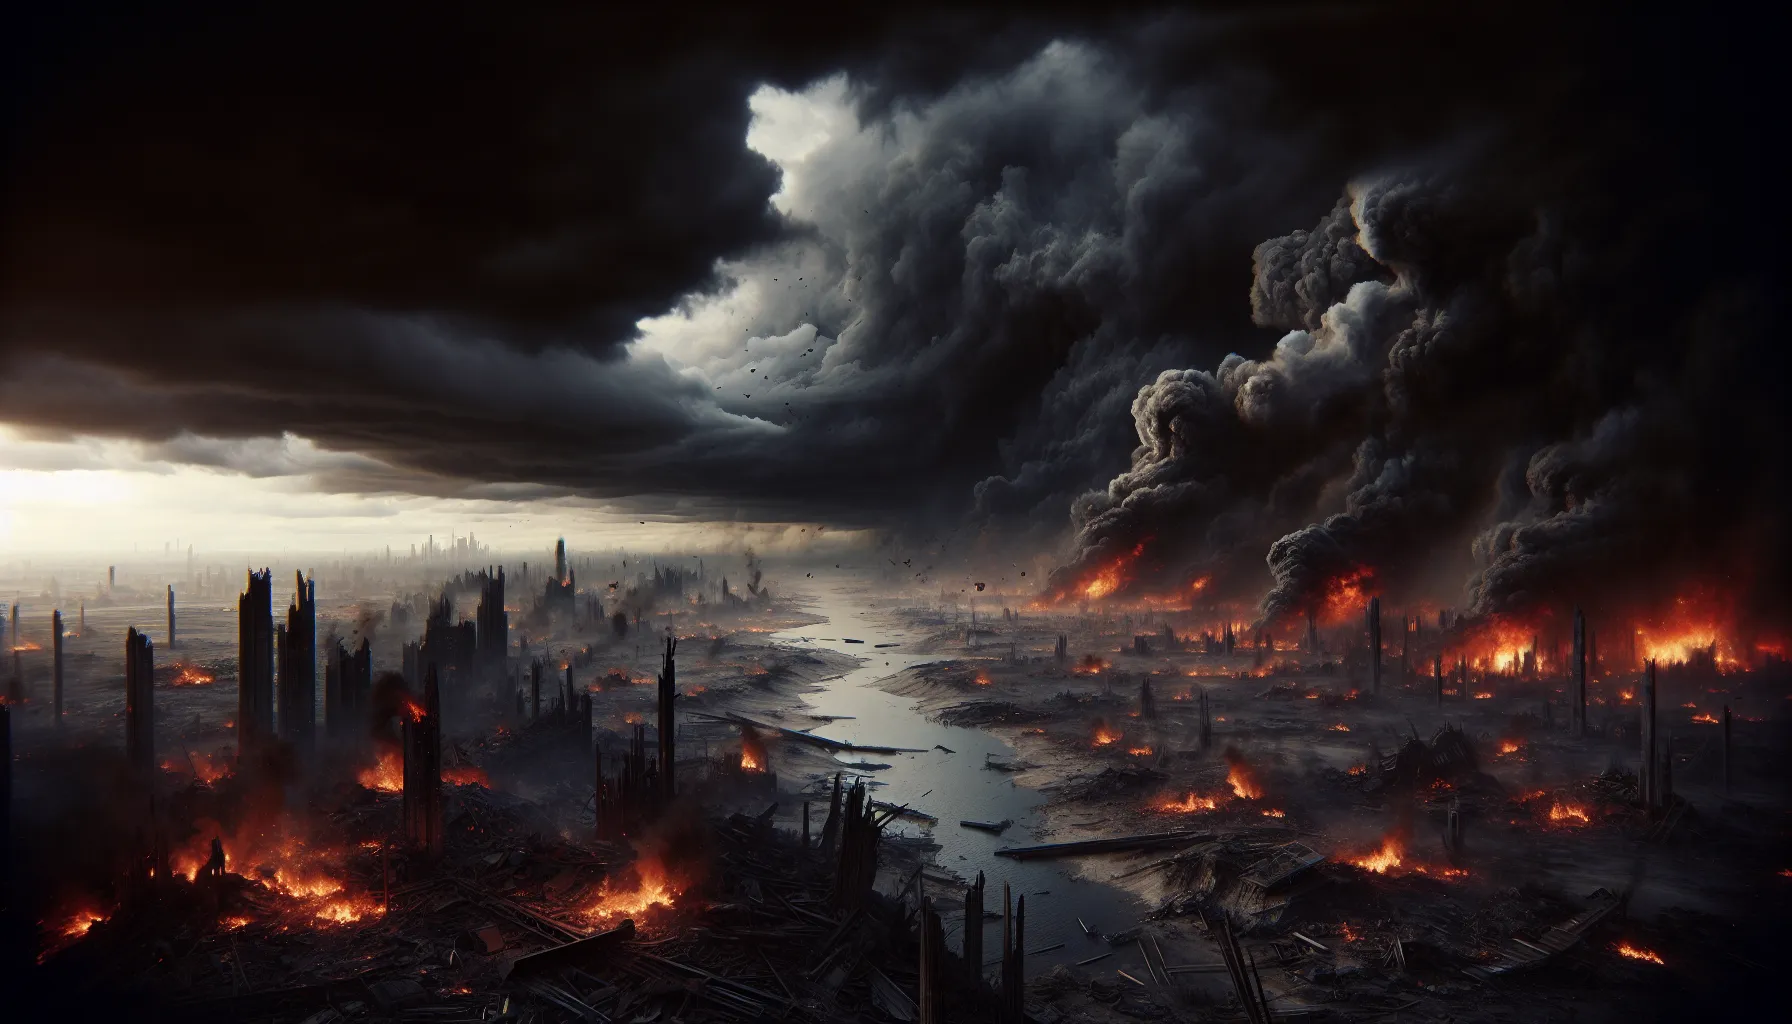 Una imagen de un paisaje apocalíptico con nubes oscuras, fuego y destrucción, representando el caos y la importancia de comprender el significado del Apocalipsis.